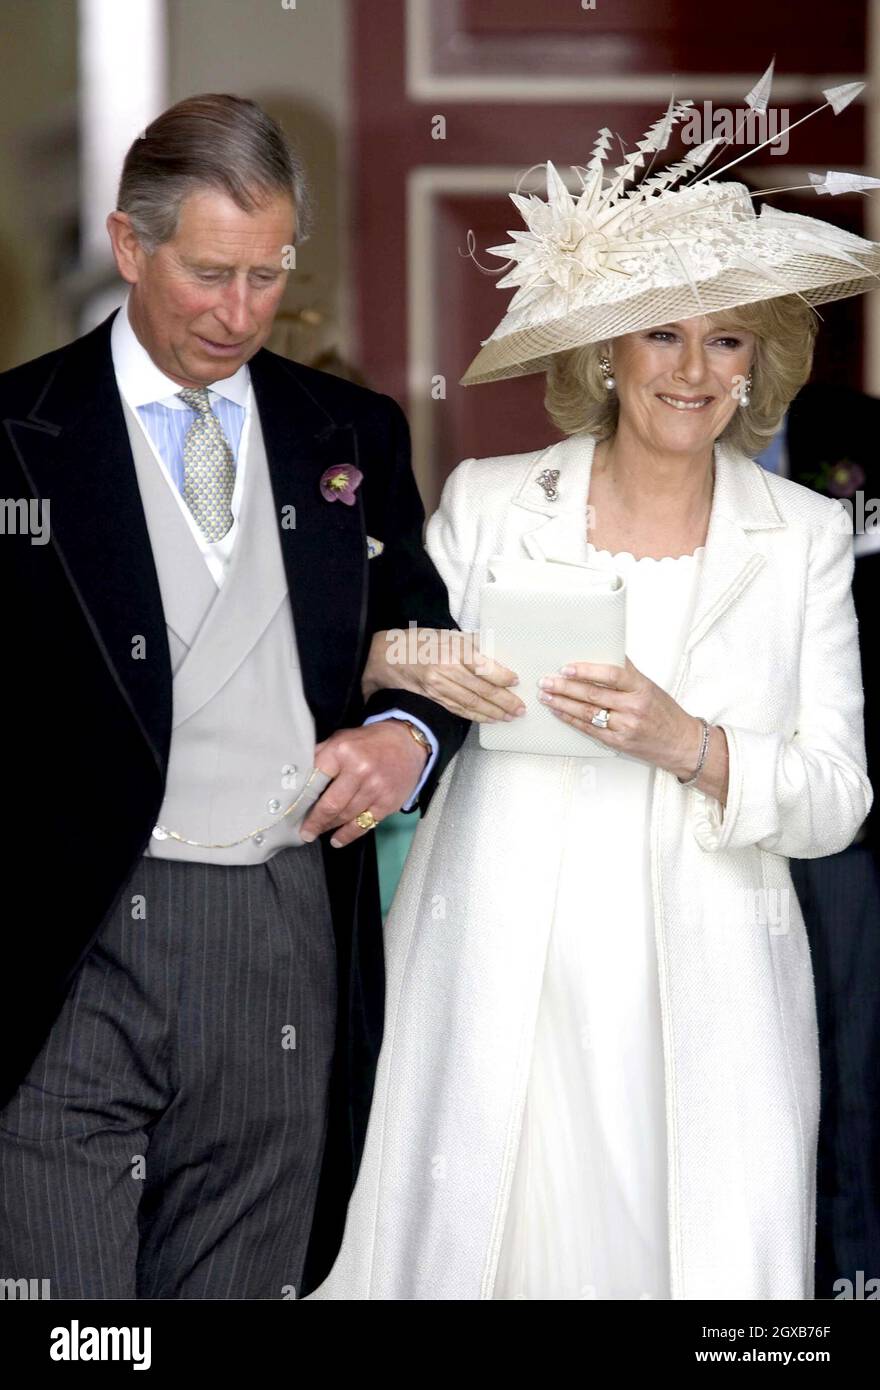 Der britische Prinz Charles, der Prinz von Wales und Camilla Parker Bowles im Guildhall, Windsor, am Samstag, den 9. April 2005, zu ihrer Hochzeitszeremonie. Die Hochzeit des Paares wird später in der St. George's Chapel von Windsor Castle gesegnet. Anwar Hussein/allactiondigital.com Stockfoto